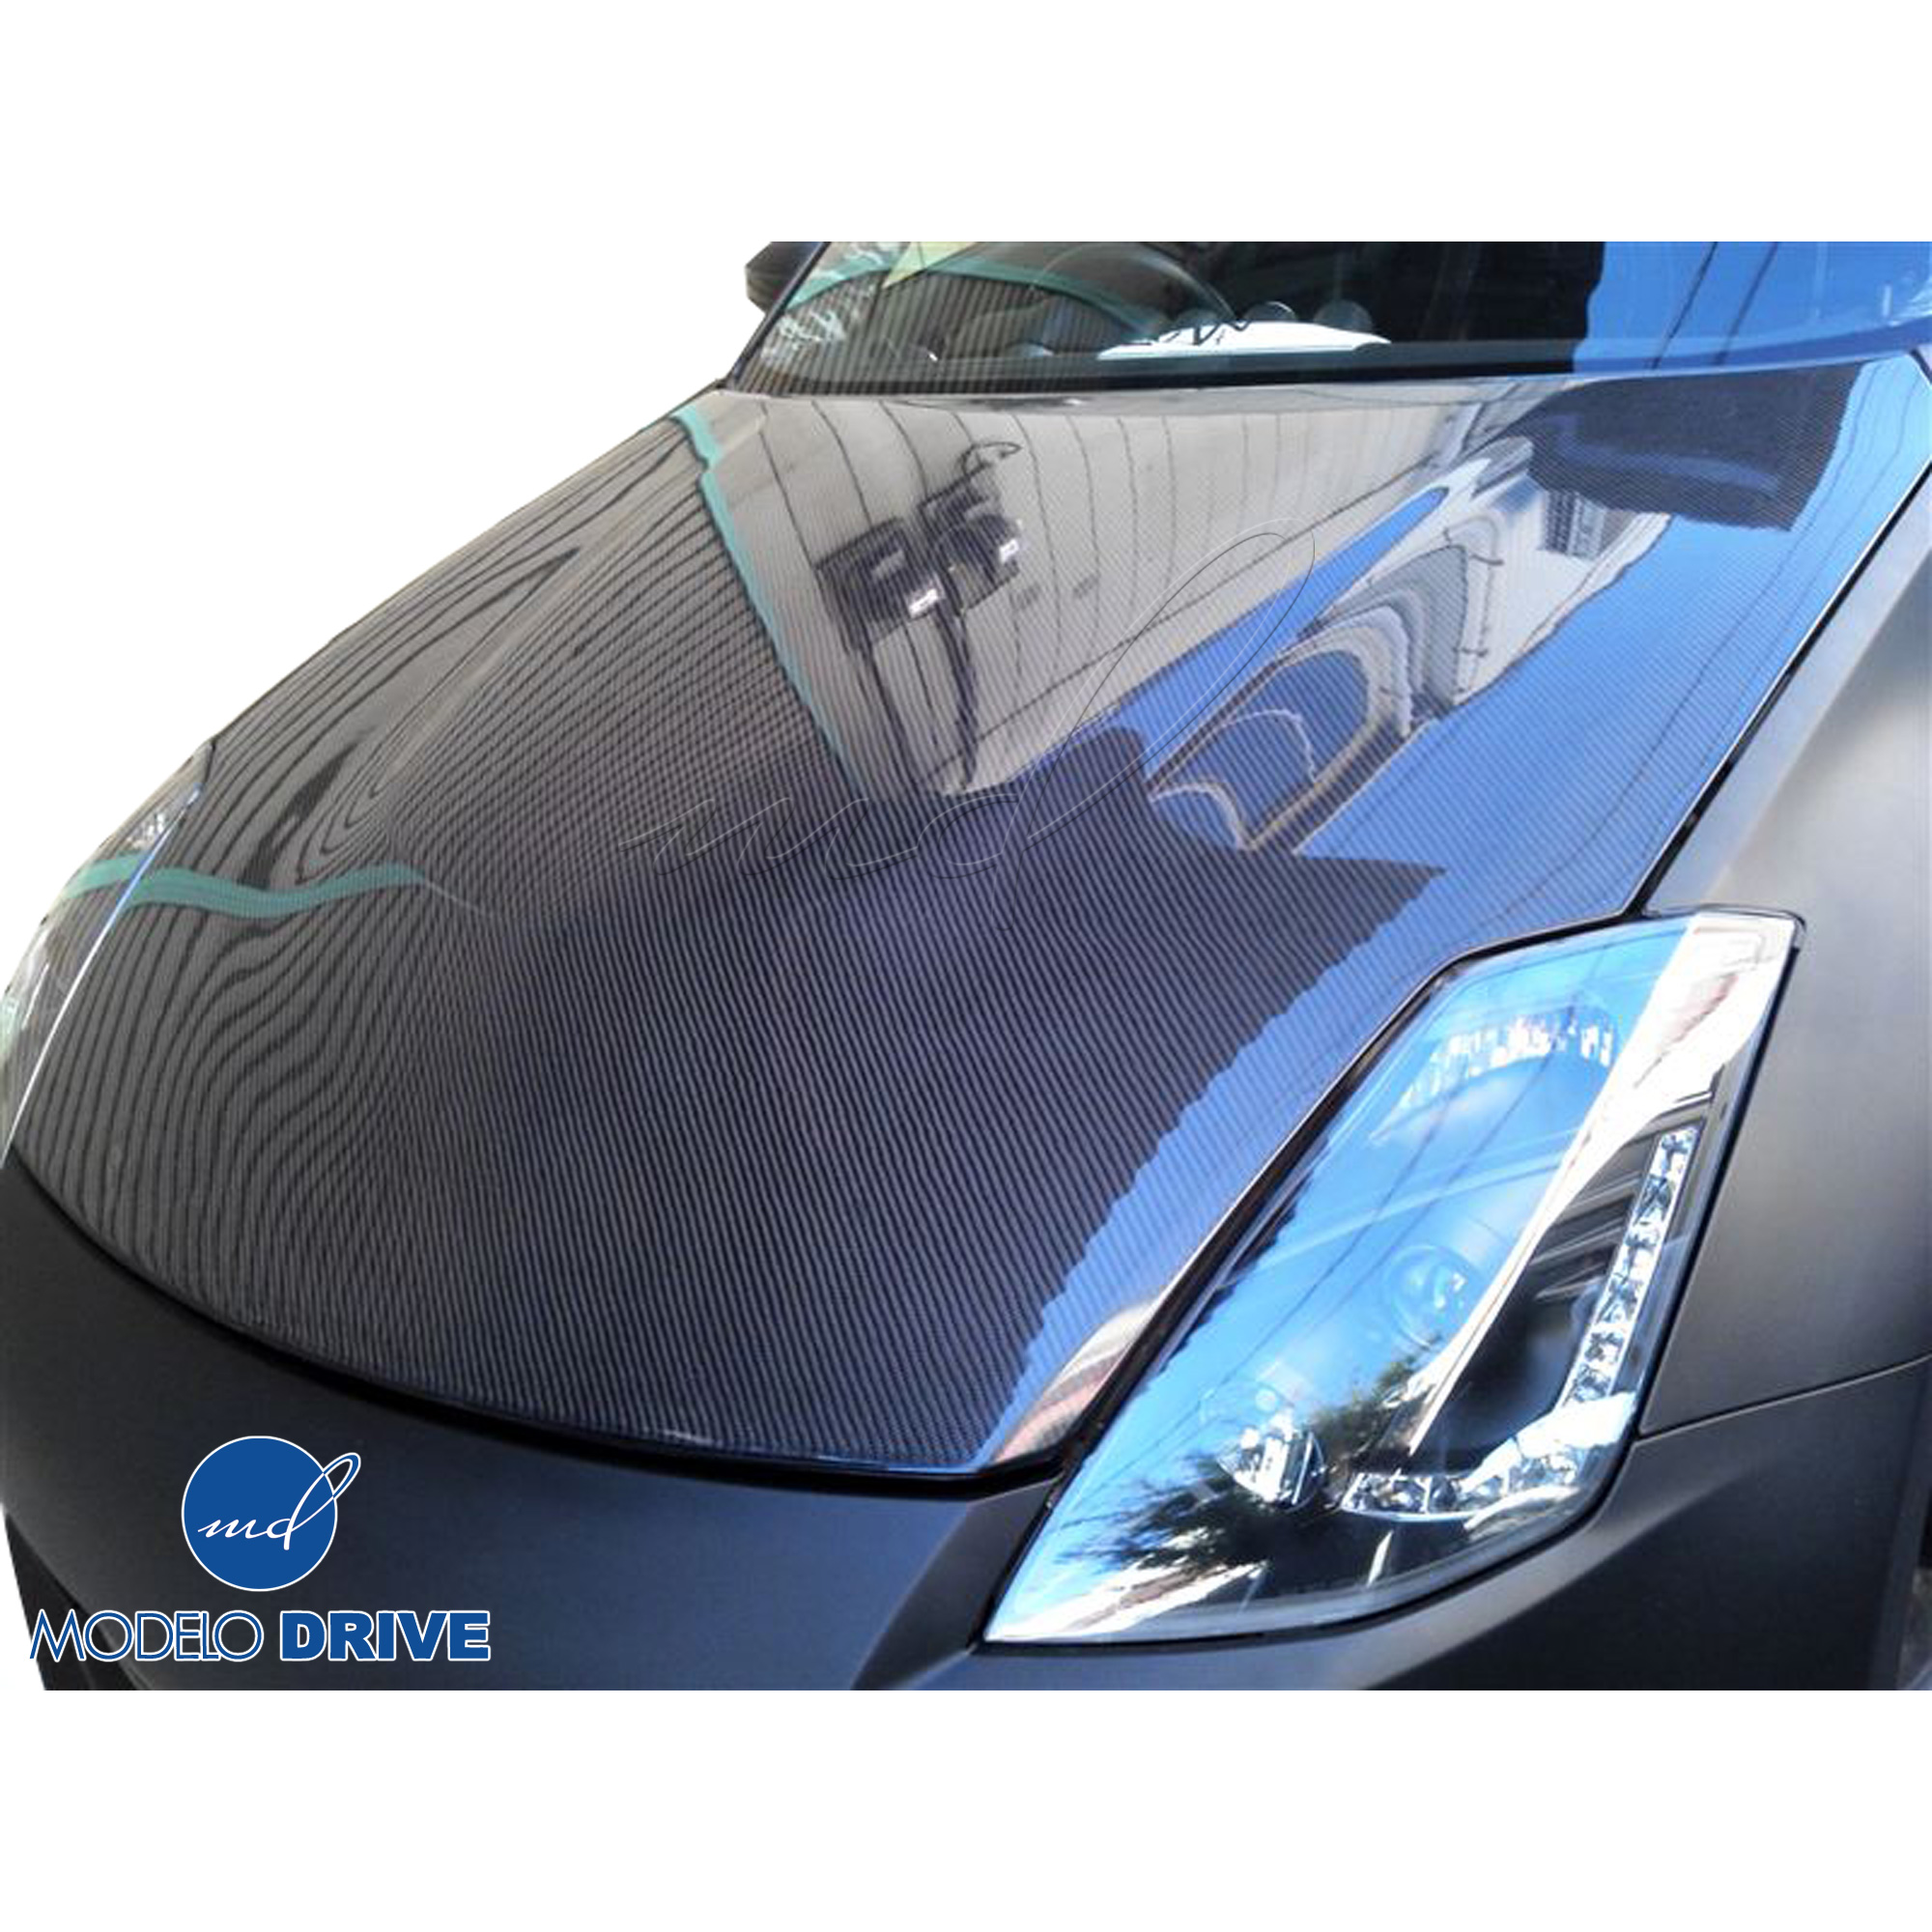 ModeloDrive Carbon Fiber OER HR Hood > Nissan 350Z Z33 2007-2008 - Image 3